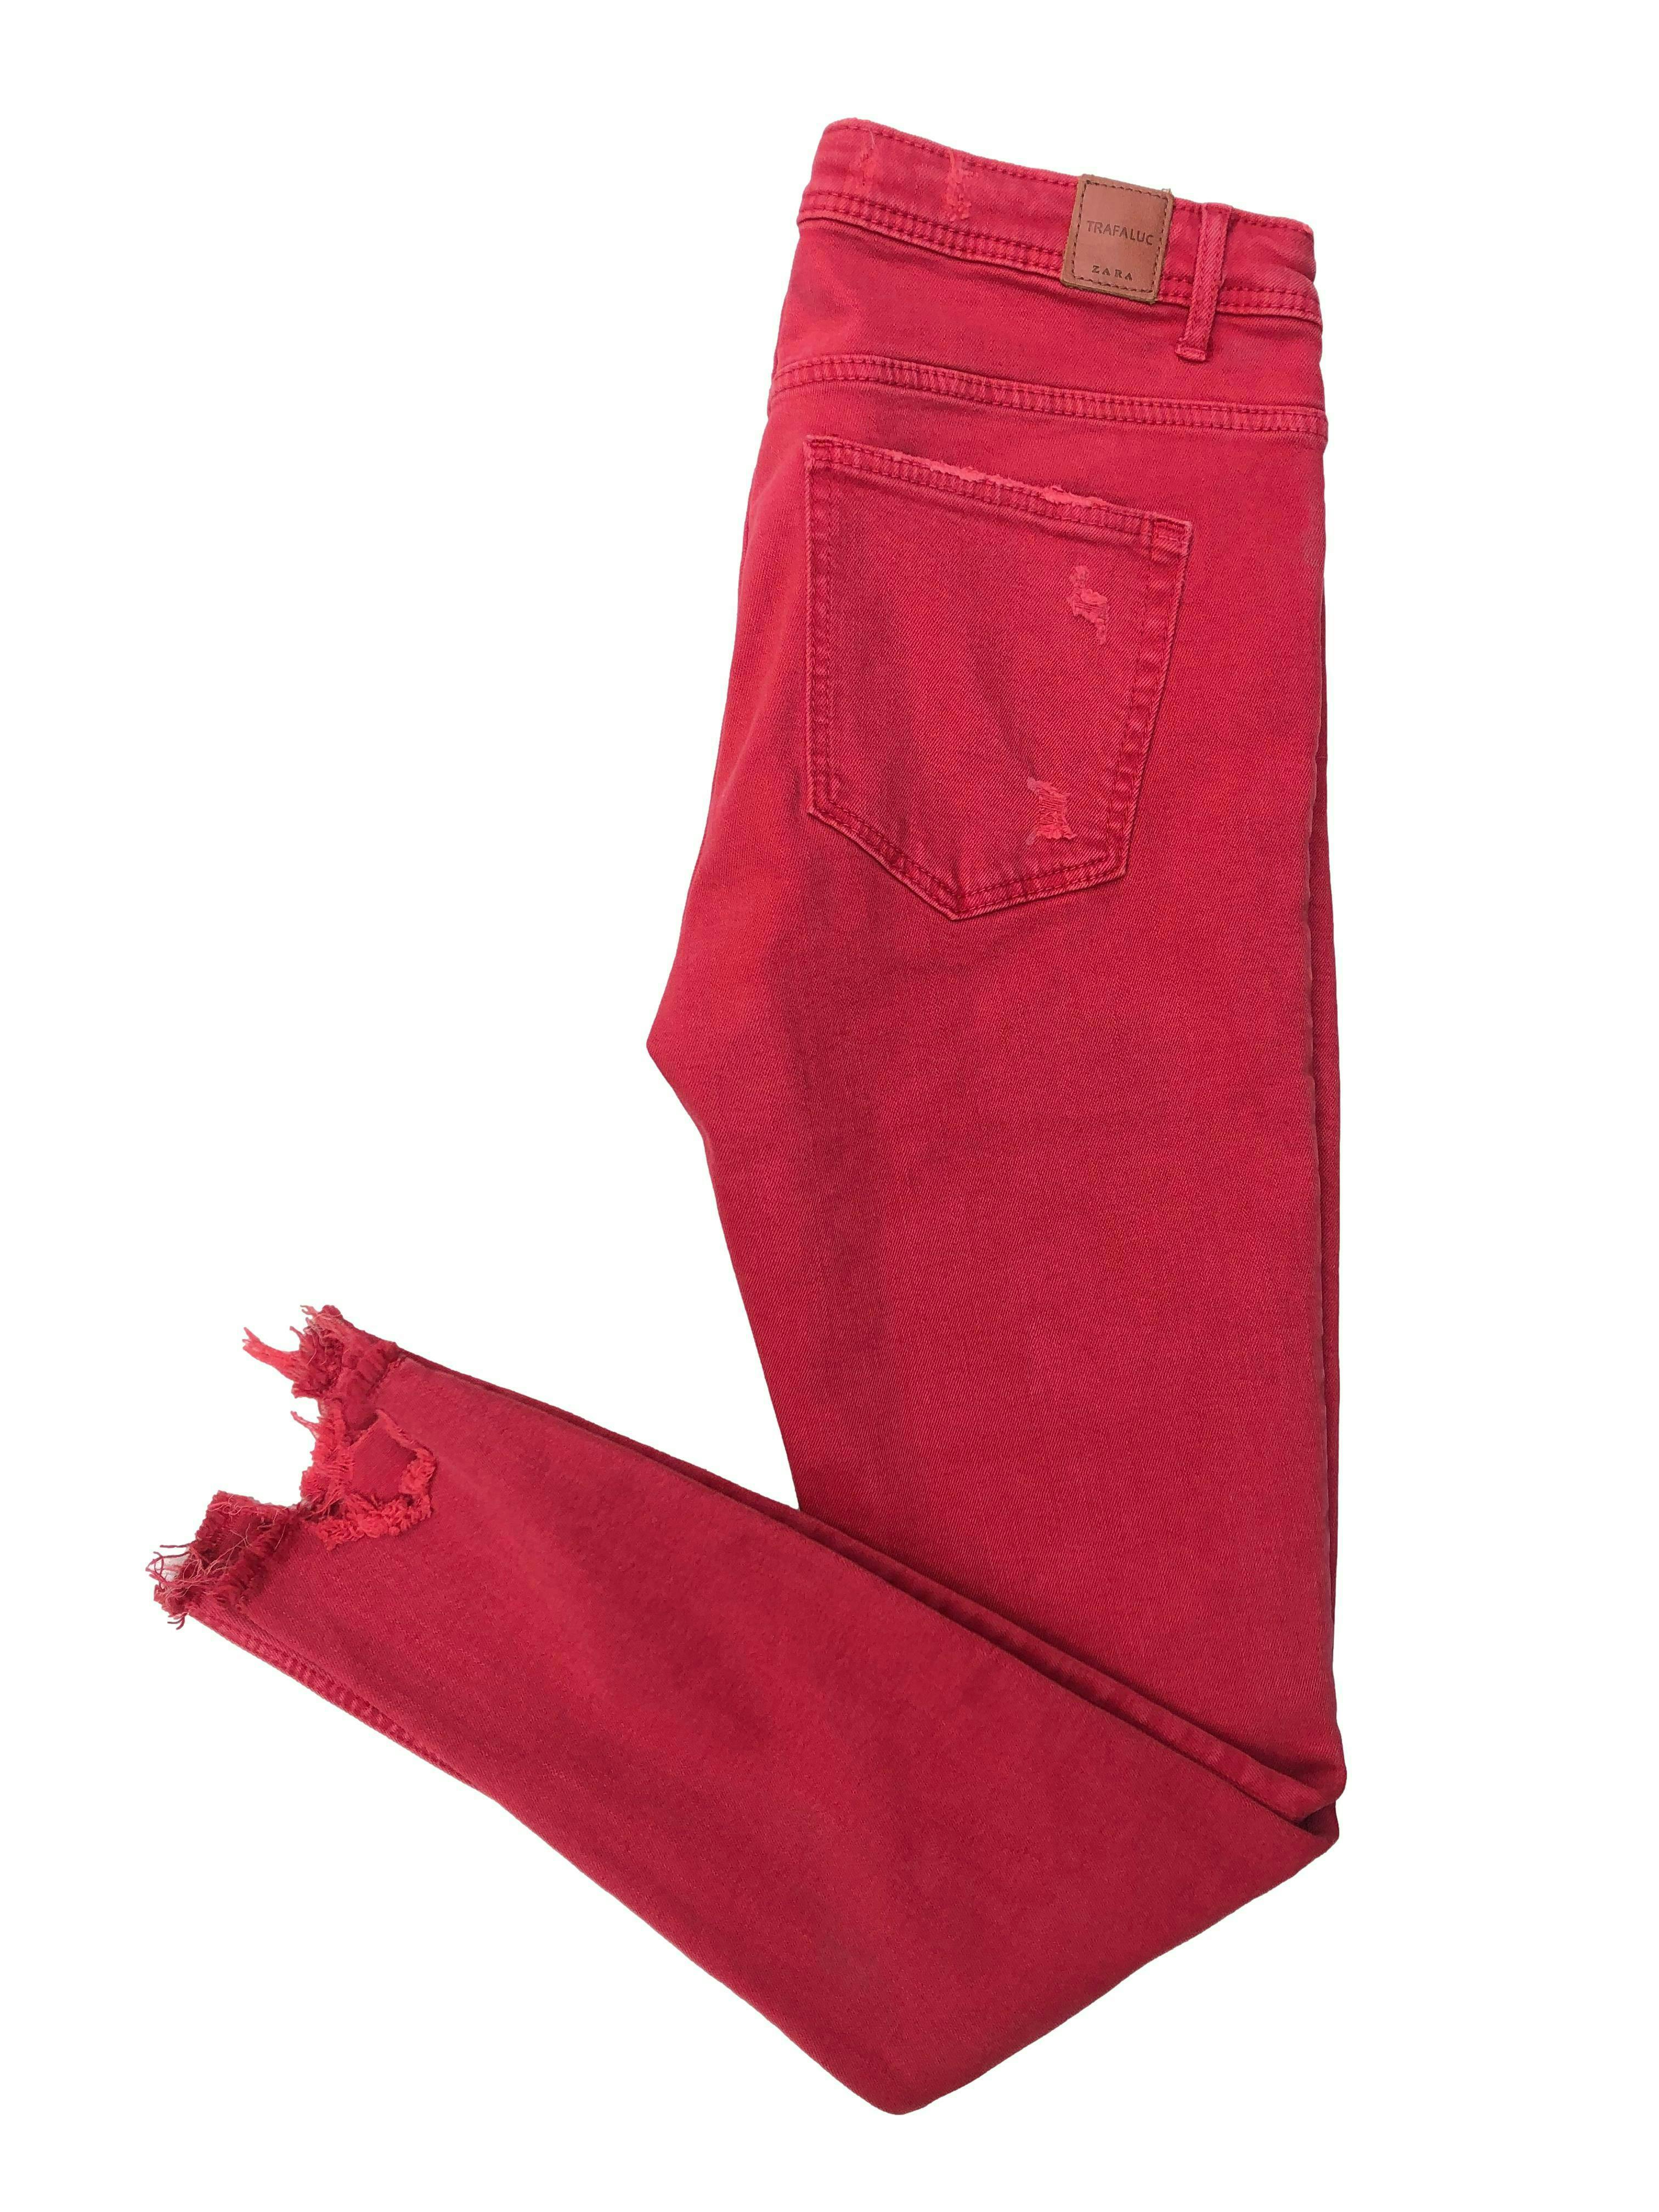 Skinny jean Zara rojo efecto lavado, con rasgados y basta cropped. Cintura 74cm Tiro 23cm Largo 92cm